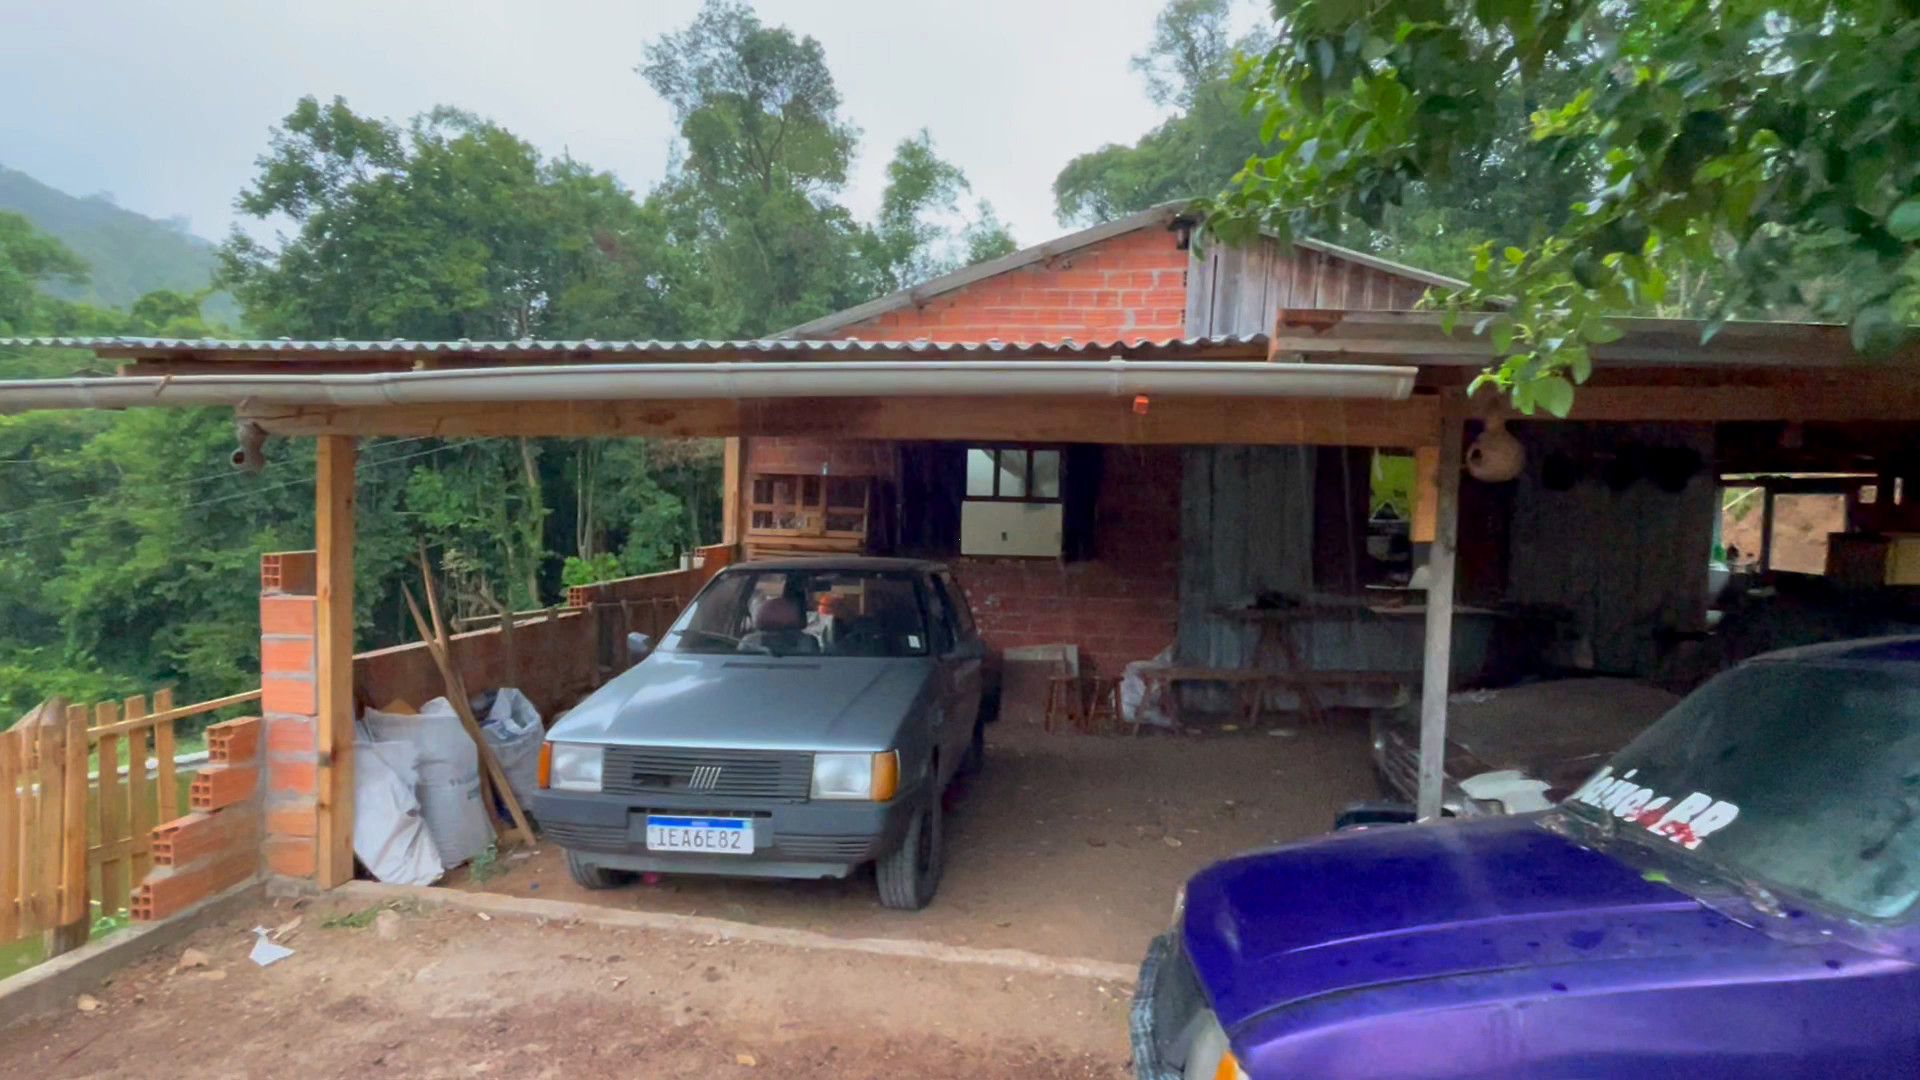 Chácara de 2.000 m² em Caraá, RS